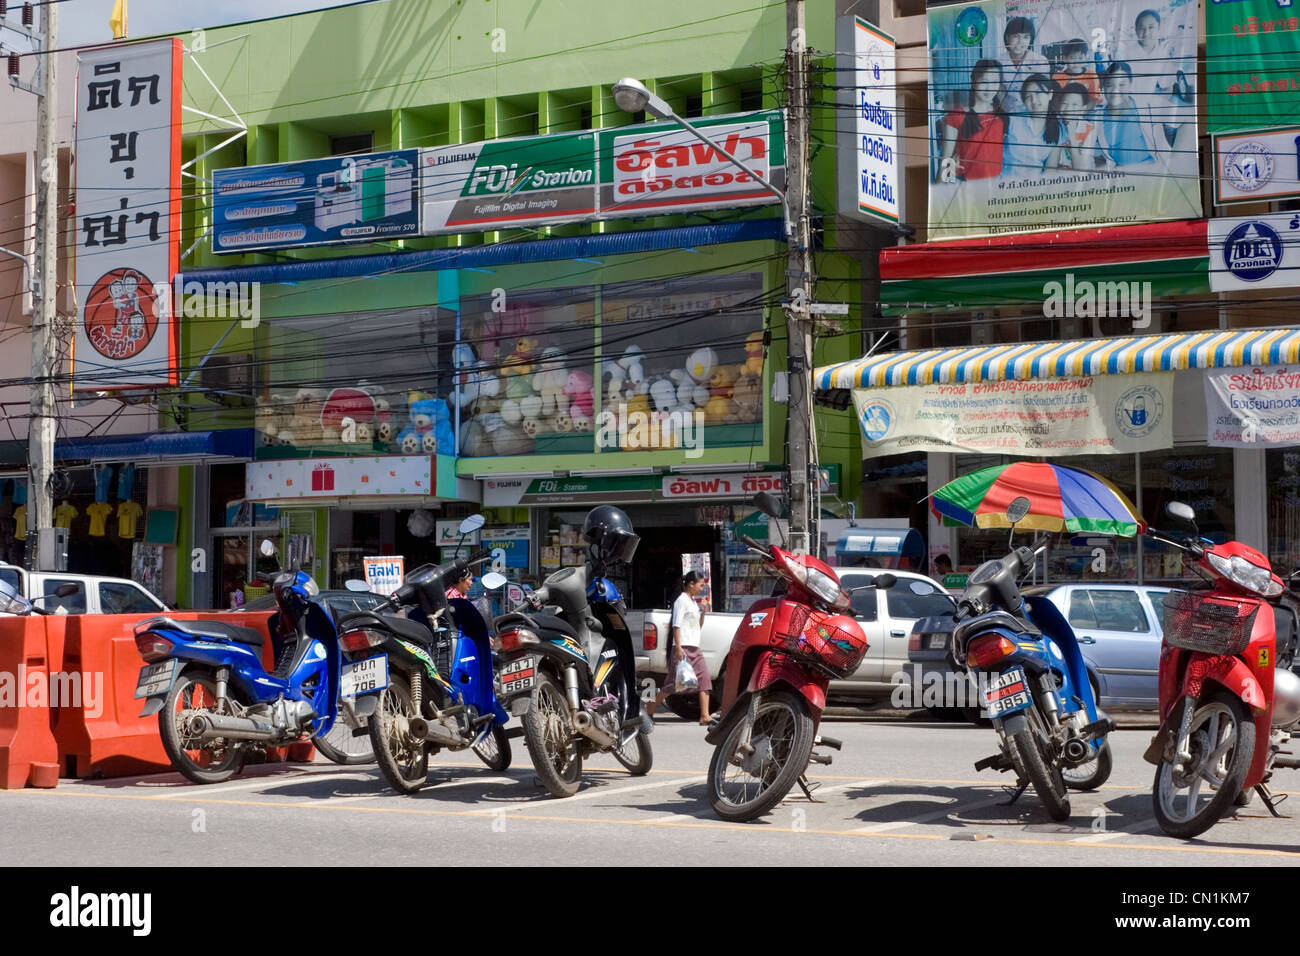 Las motocicletas están aparcados en frente de las tiendas en una calle de la ciudad de Chiang Rai, Tailandia. Foto de stock